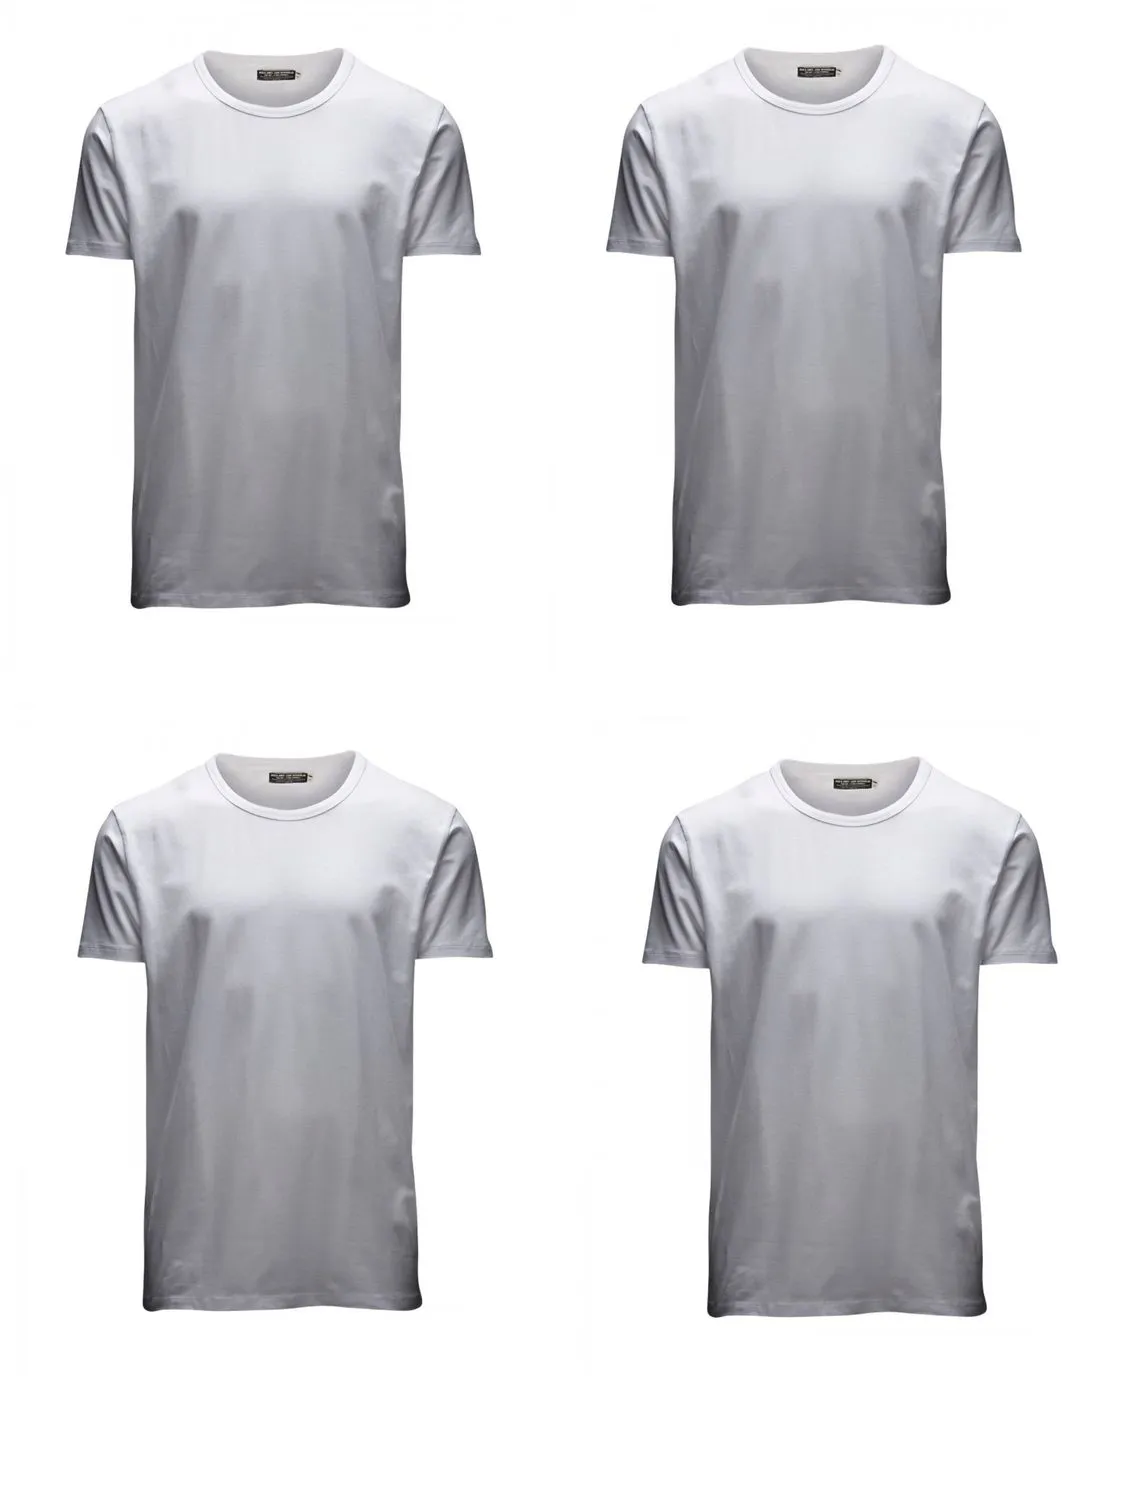 Jack & Jones Herren T-Shirt O-Neck & V-Neck Slim Fit 4er Pack Slim Fit Weiß S